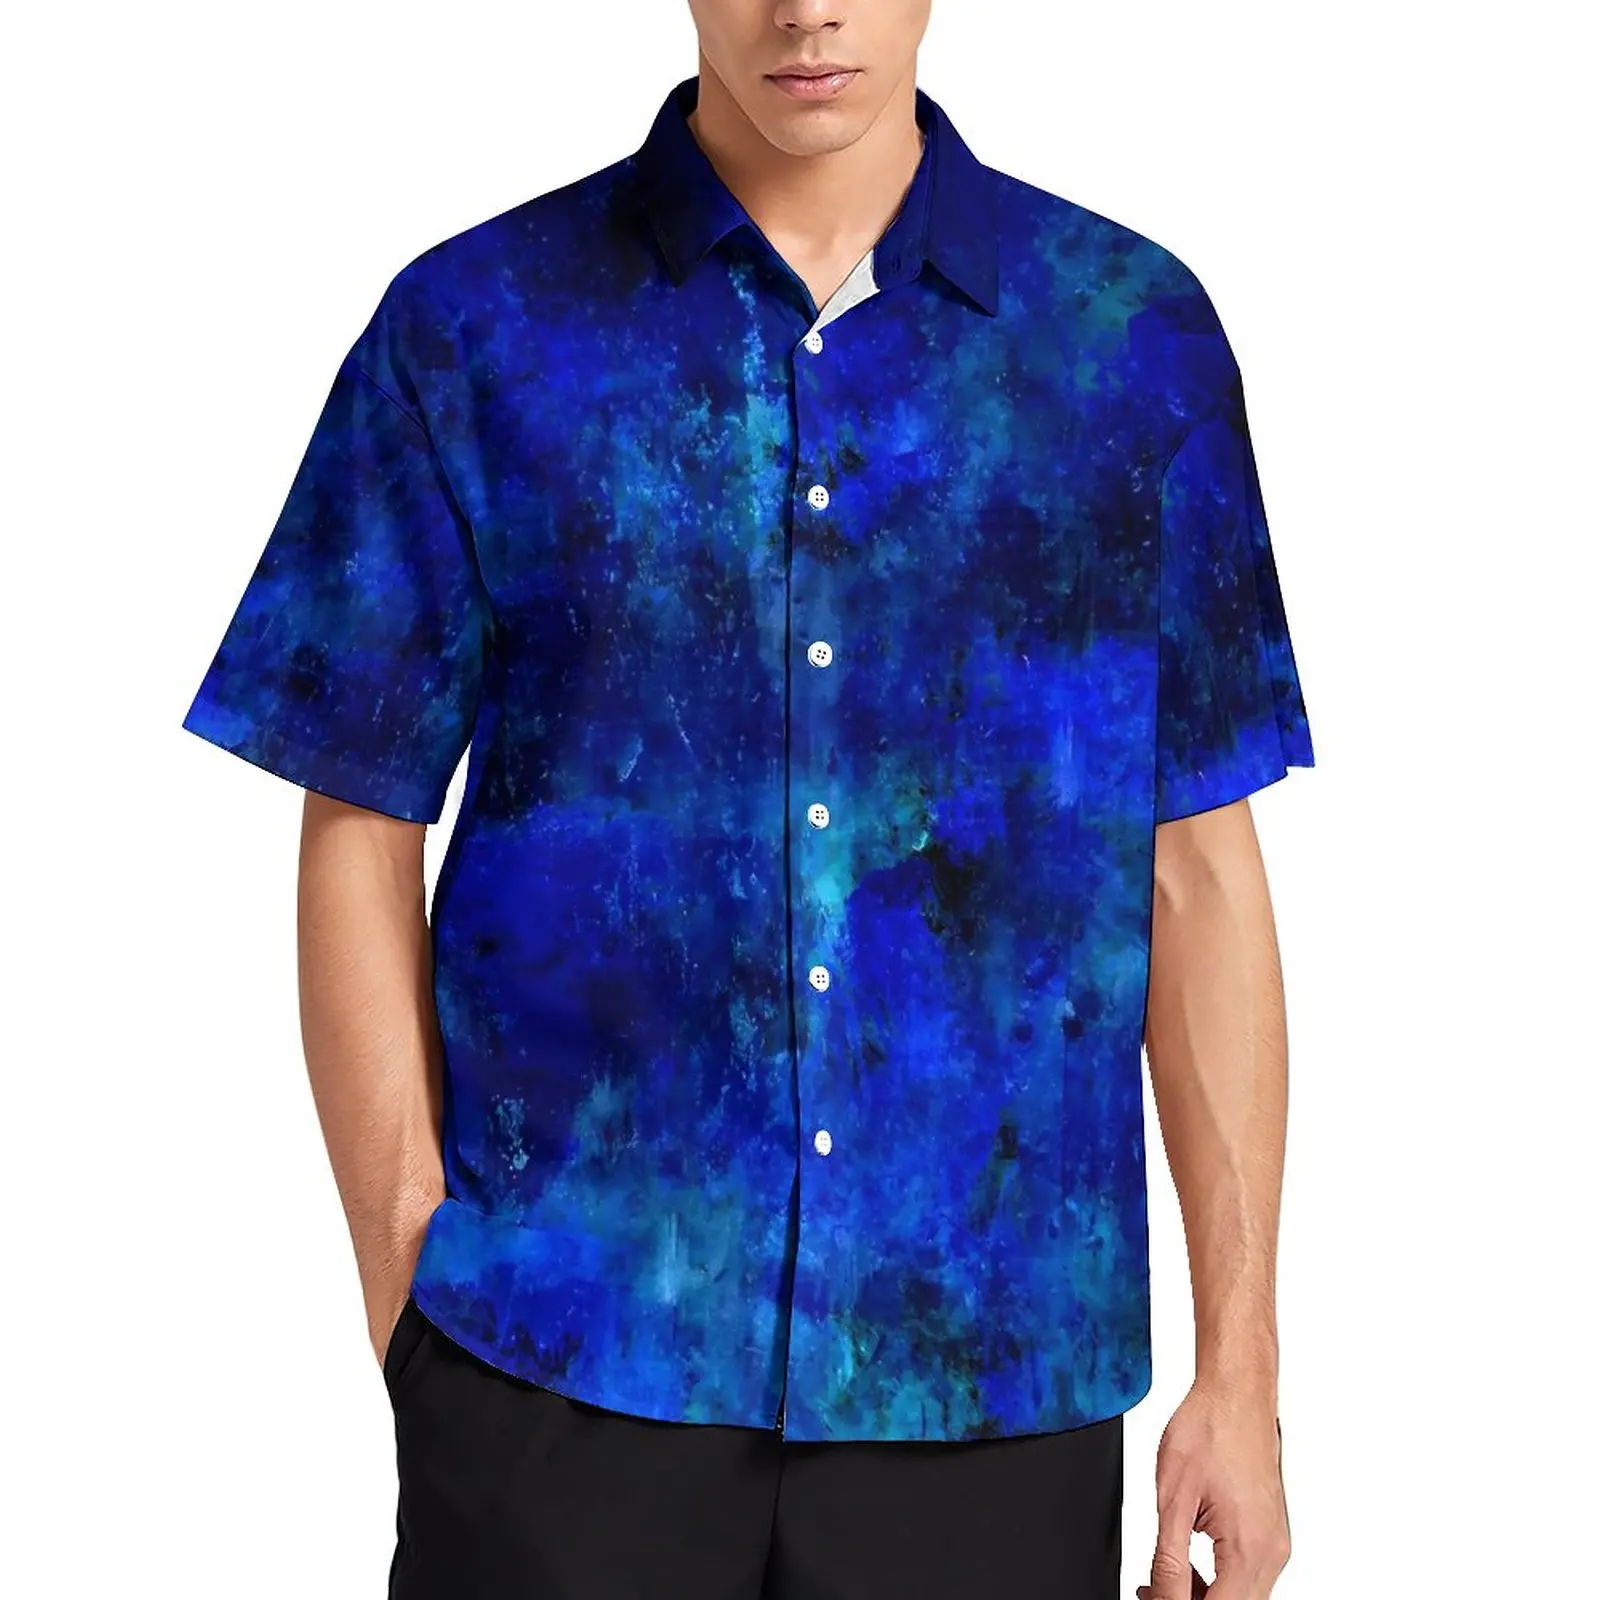 

Blue Paint Splatter Vacation Shirt Abstract Print Hawaii Casual Shirts Man Harajuku Blouses Short Sleeve Pattern Tops Large Size